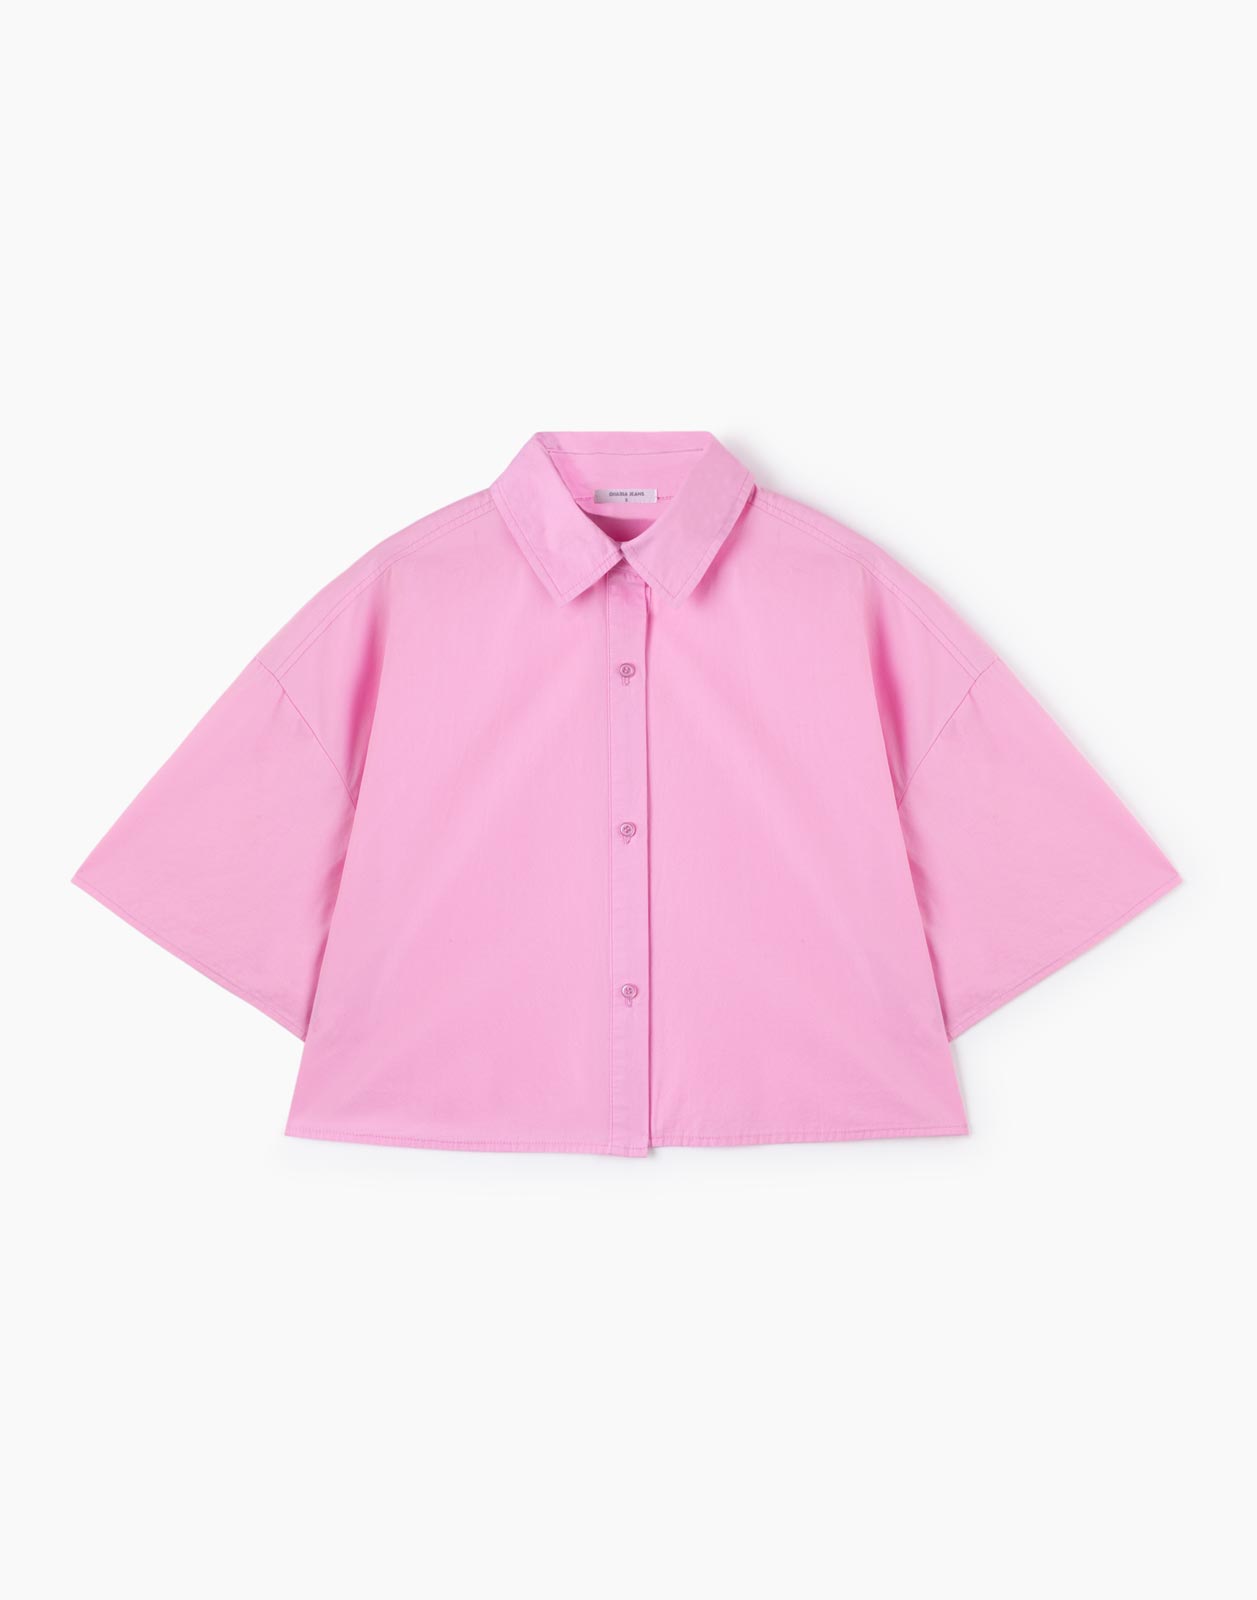 Рубашка женская Gloria Jeans GWT003024 розовая 2XS